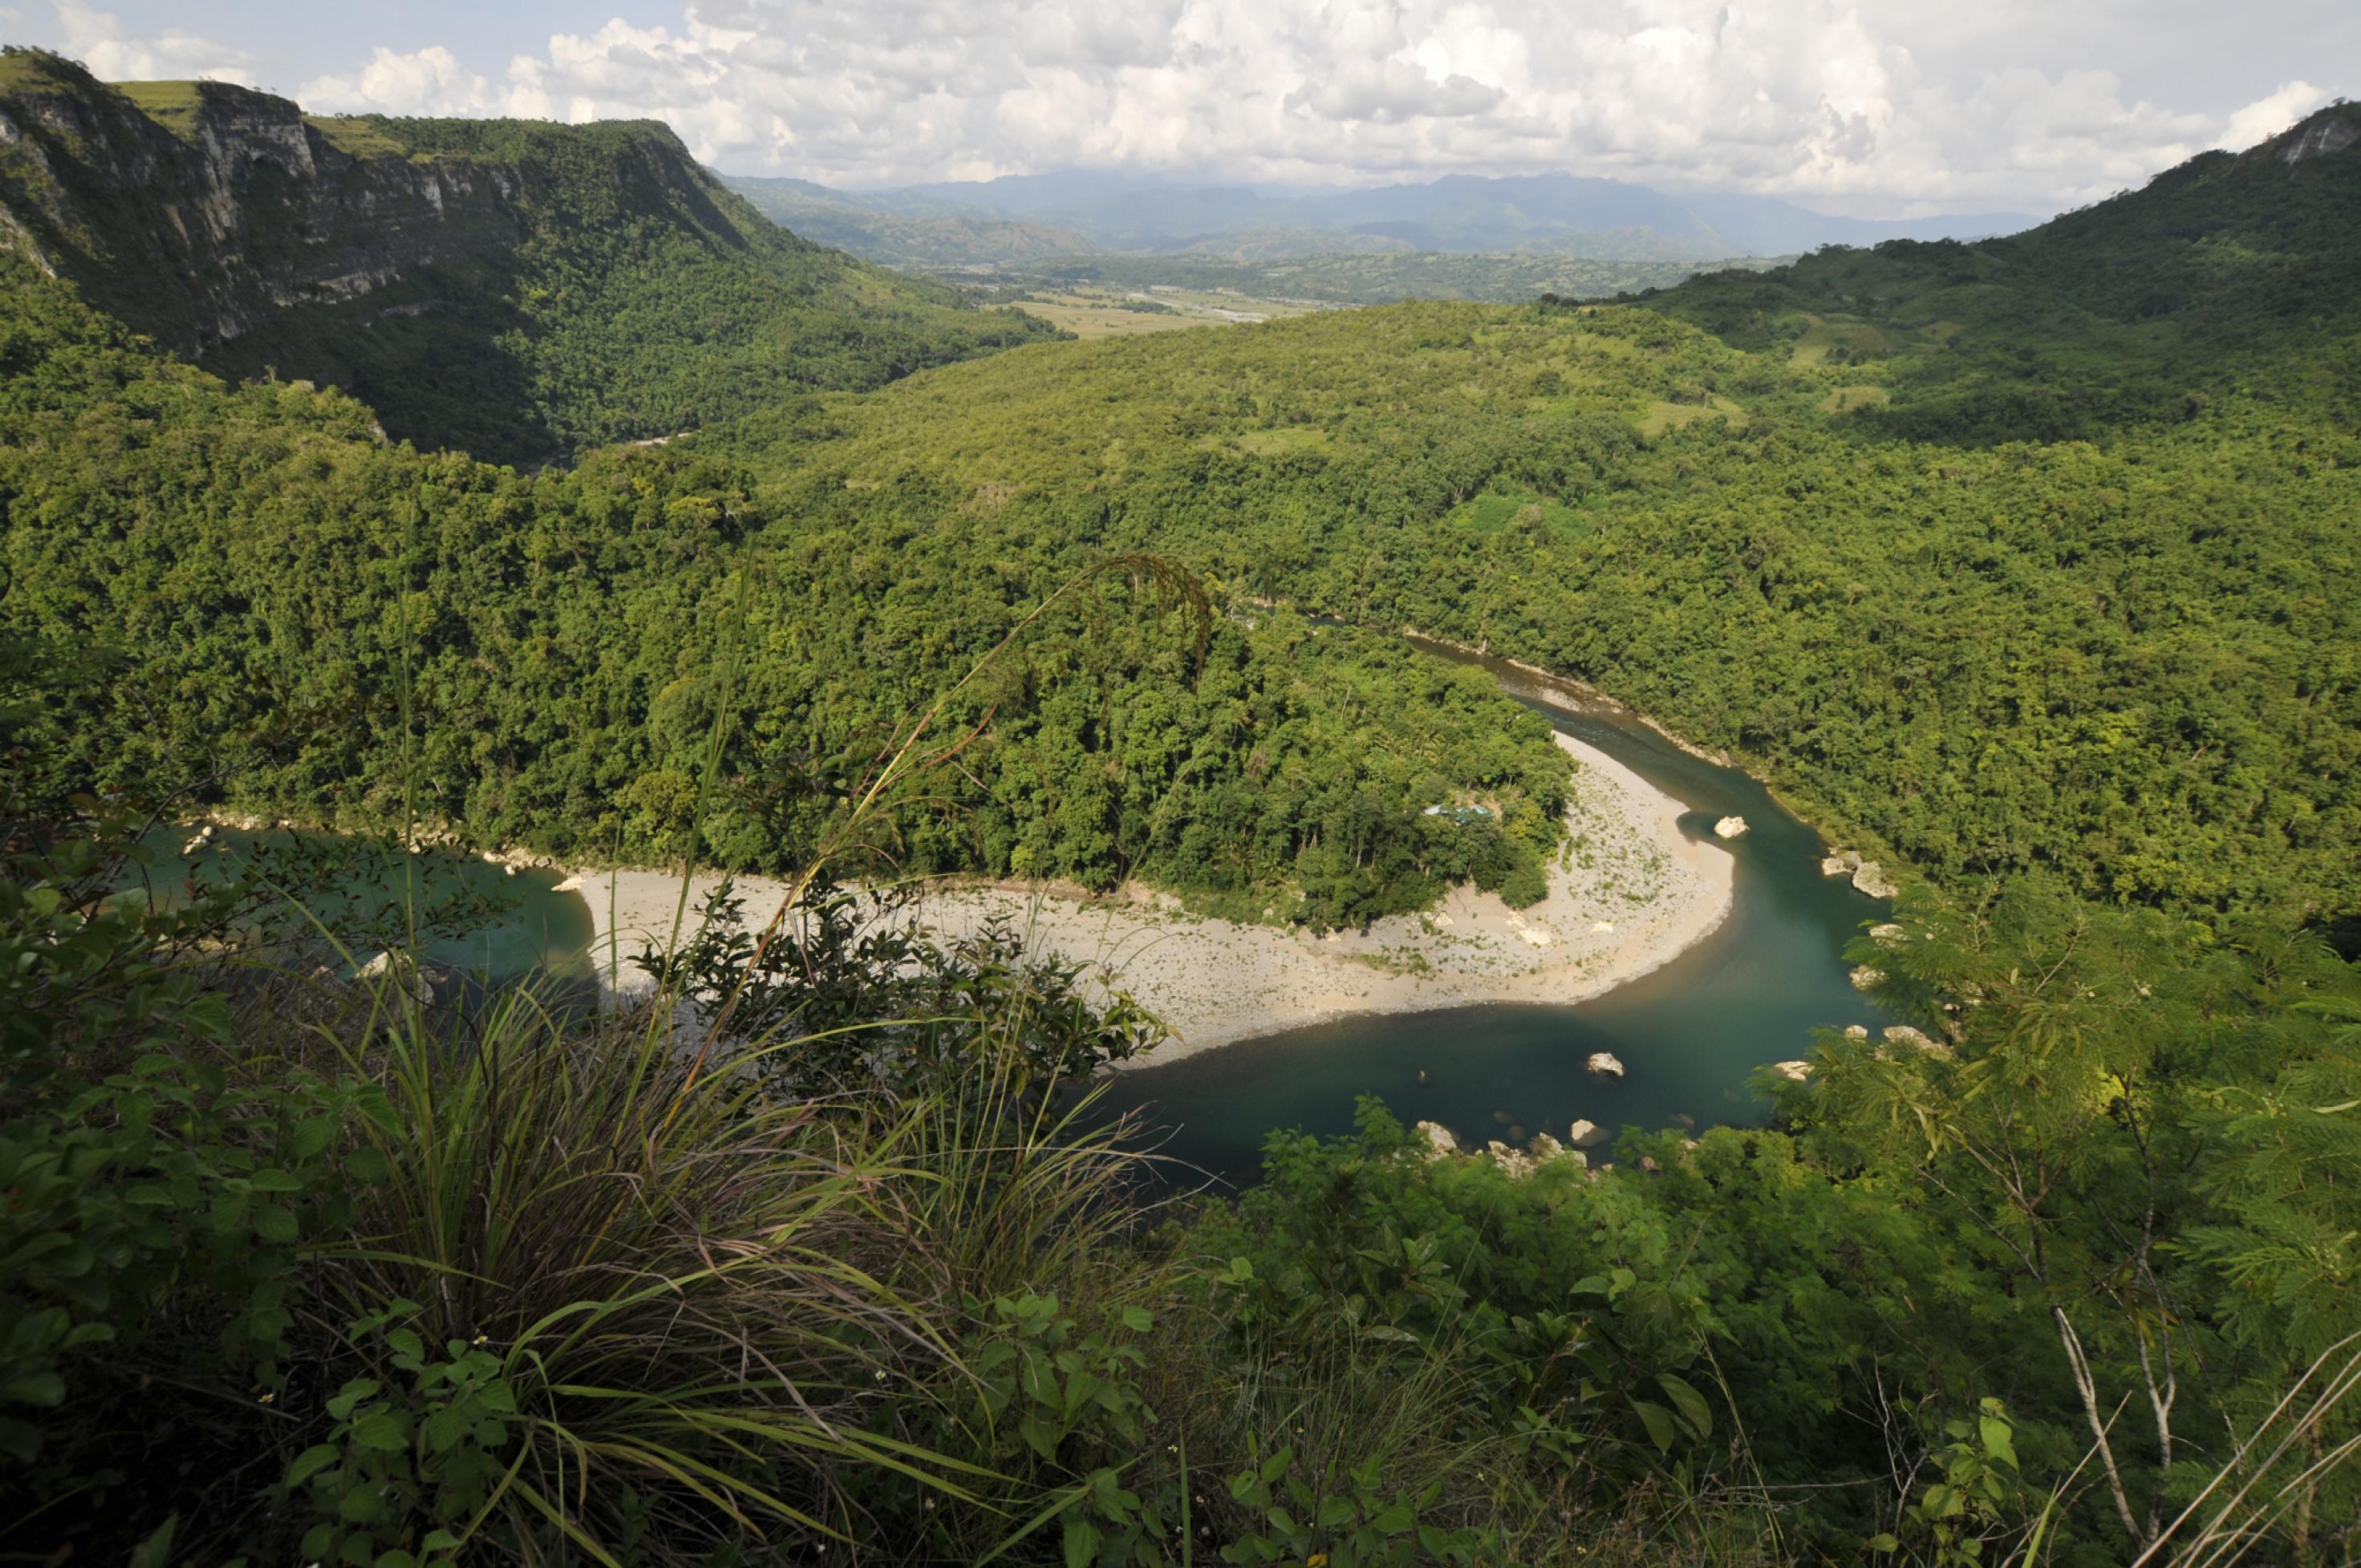 Wunderschön, mit Wald bedeckt und von einem Fluss durchzogen zeigt sich die Landschaft in der Nähe der Callao-Höhle auf der philippinischen Insel Luzon. Hier lebte vor vielen Jahrzehntausenden Homo luzonensis – eine kleinwüchsige, noch rätselhafte Menschenart.